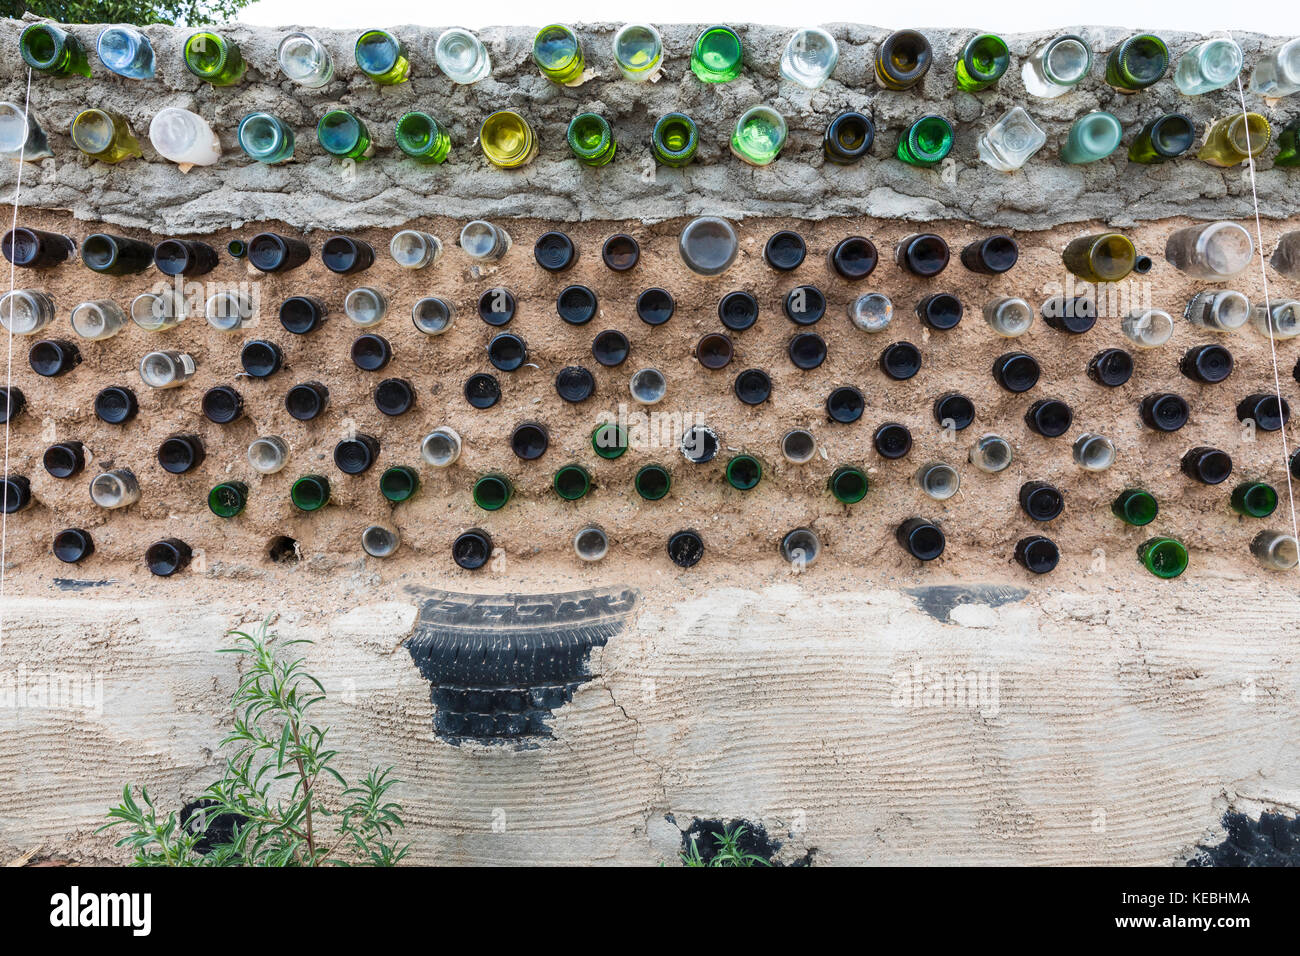 Botellas de vidrio y materiales reciclados utilizados para la construcción de un muro, la mayor comunidad mundial de earthship, cerca de Taos, Nuevo México, EE.UU. Foto de stock